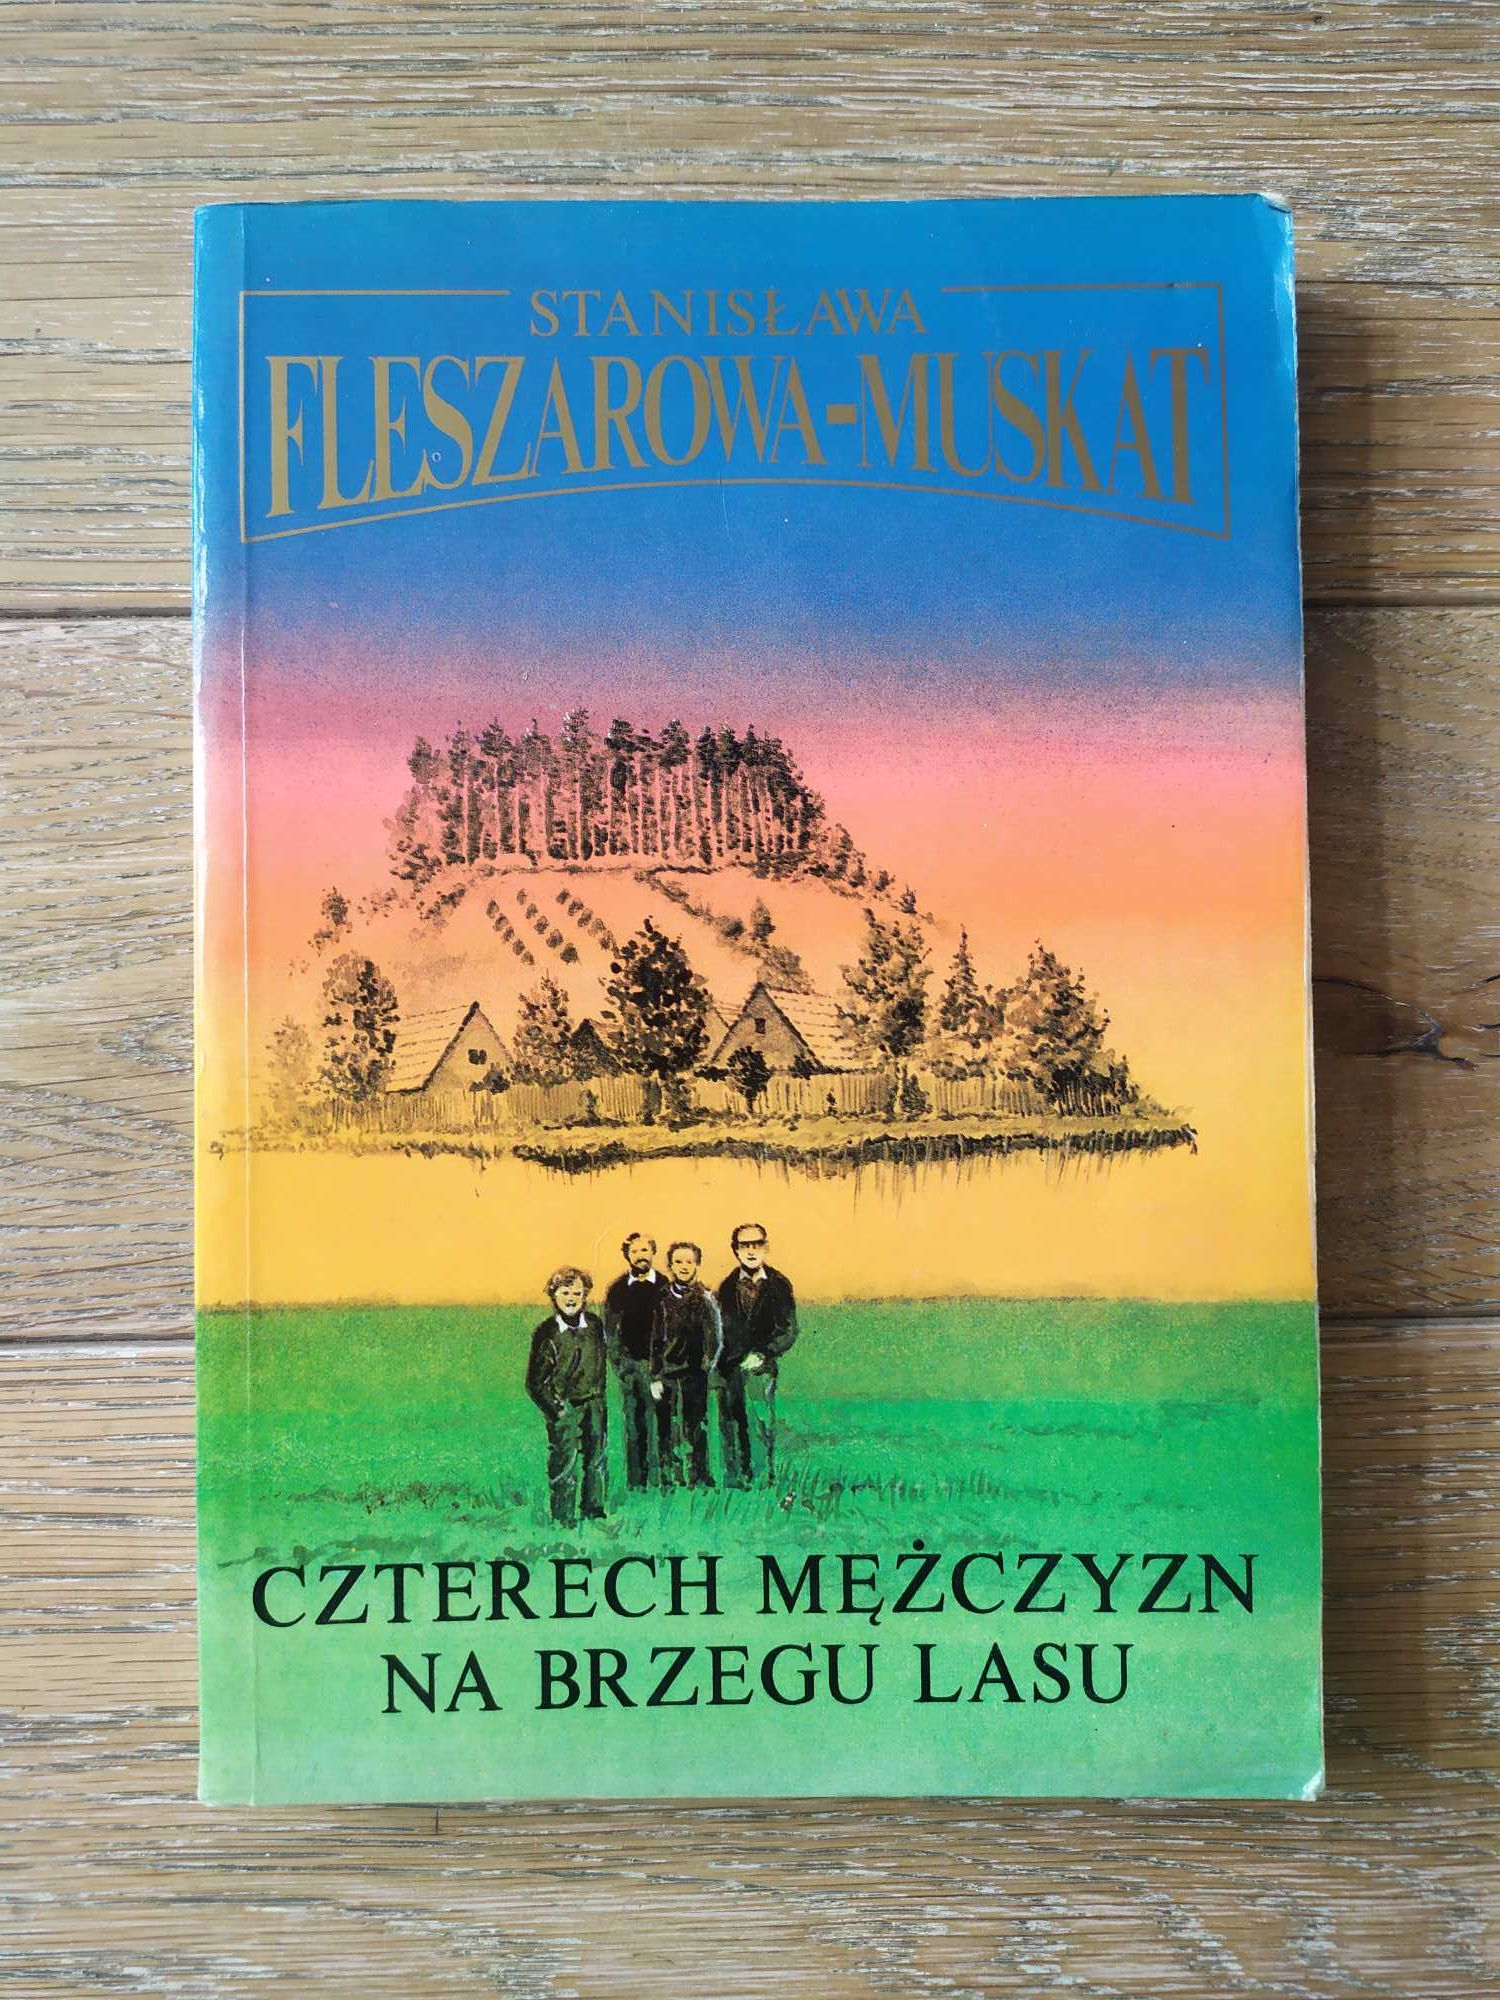 Czterech mężczyzn na brzegu lasu Stanisława Fleszarowa-Muskat